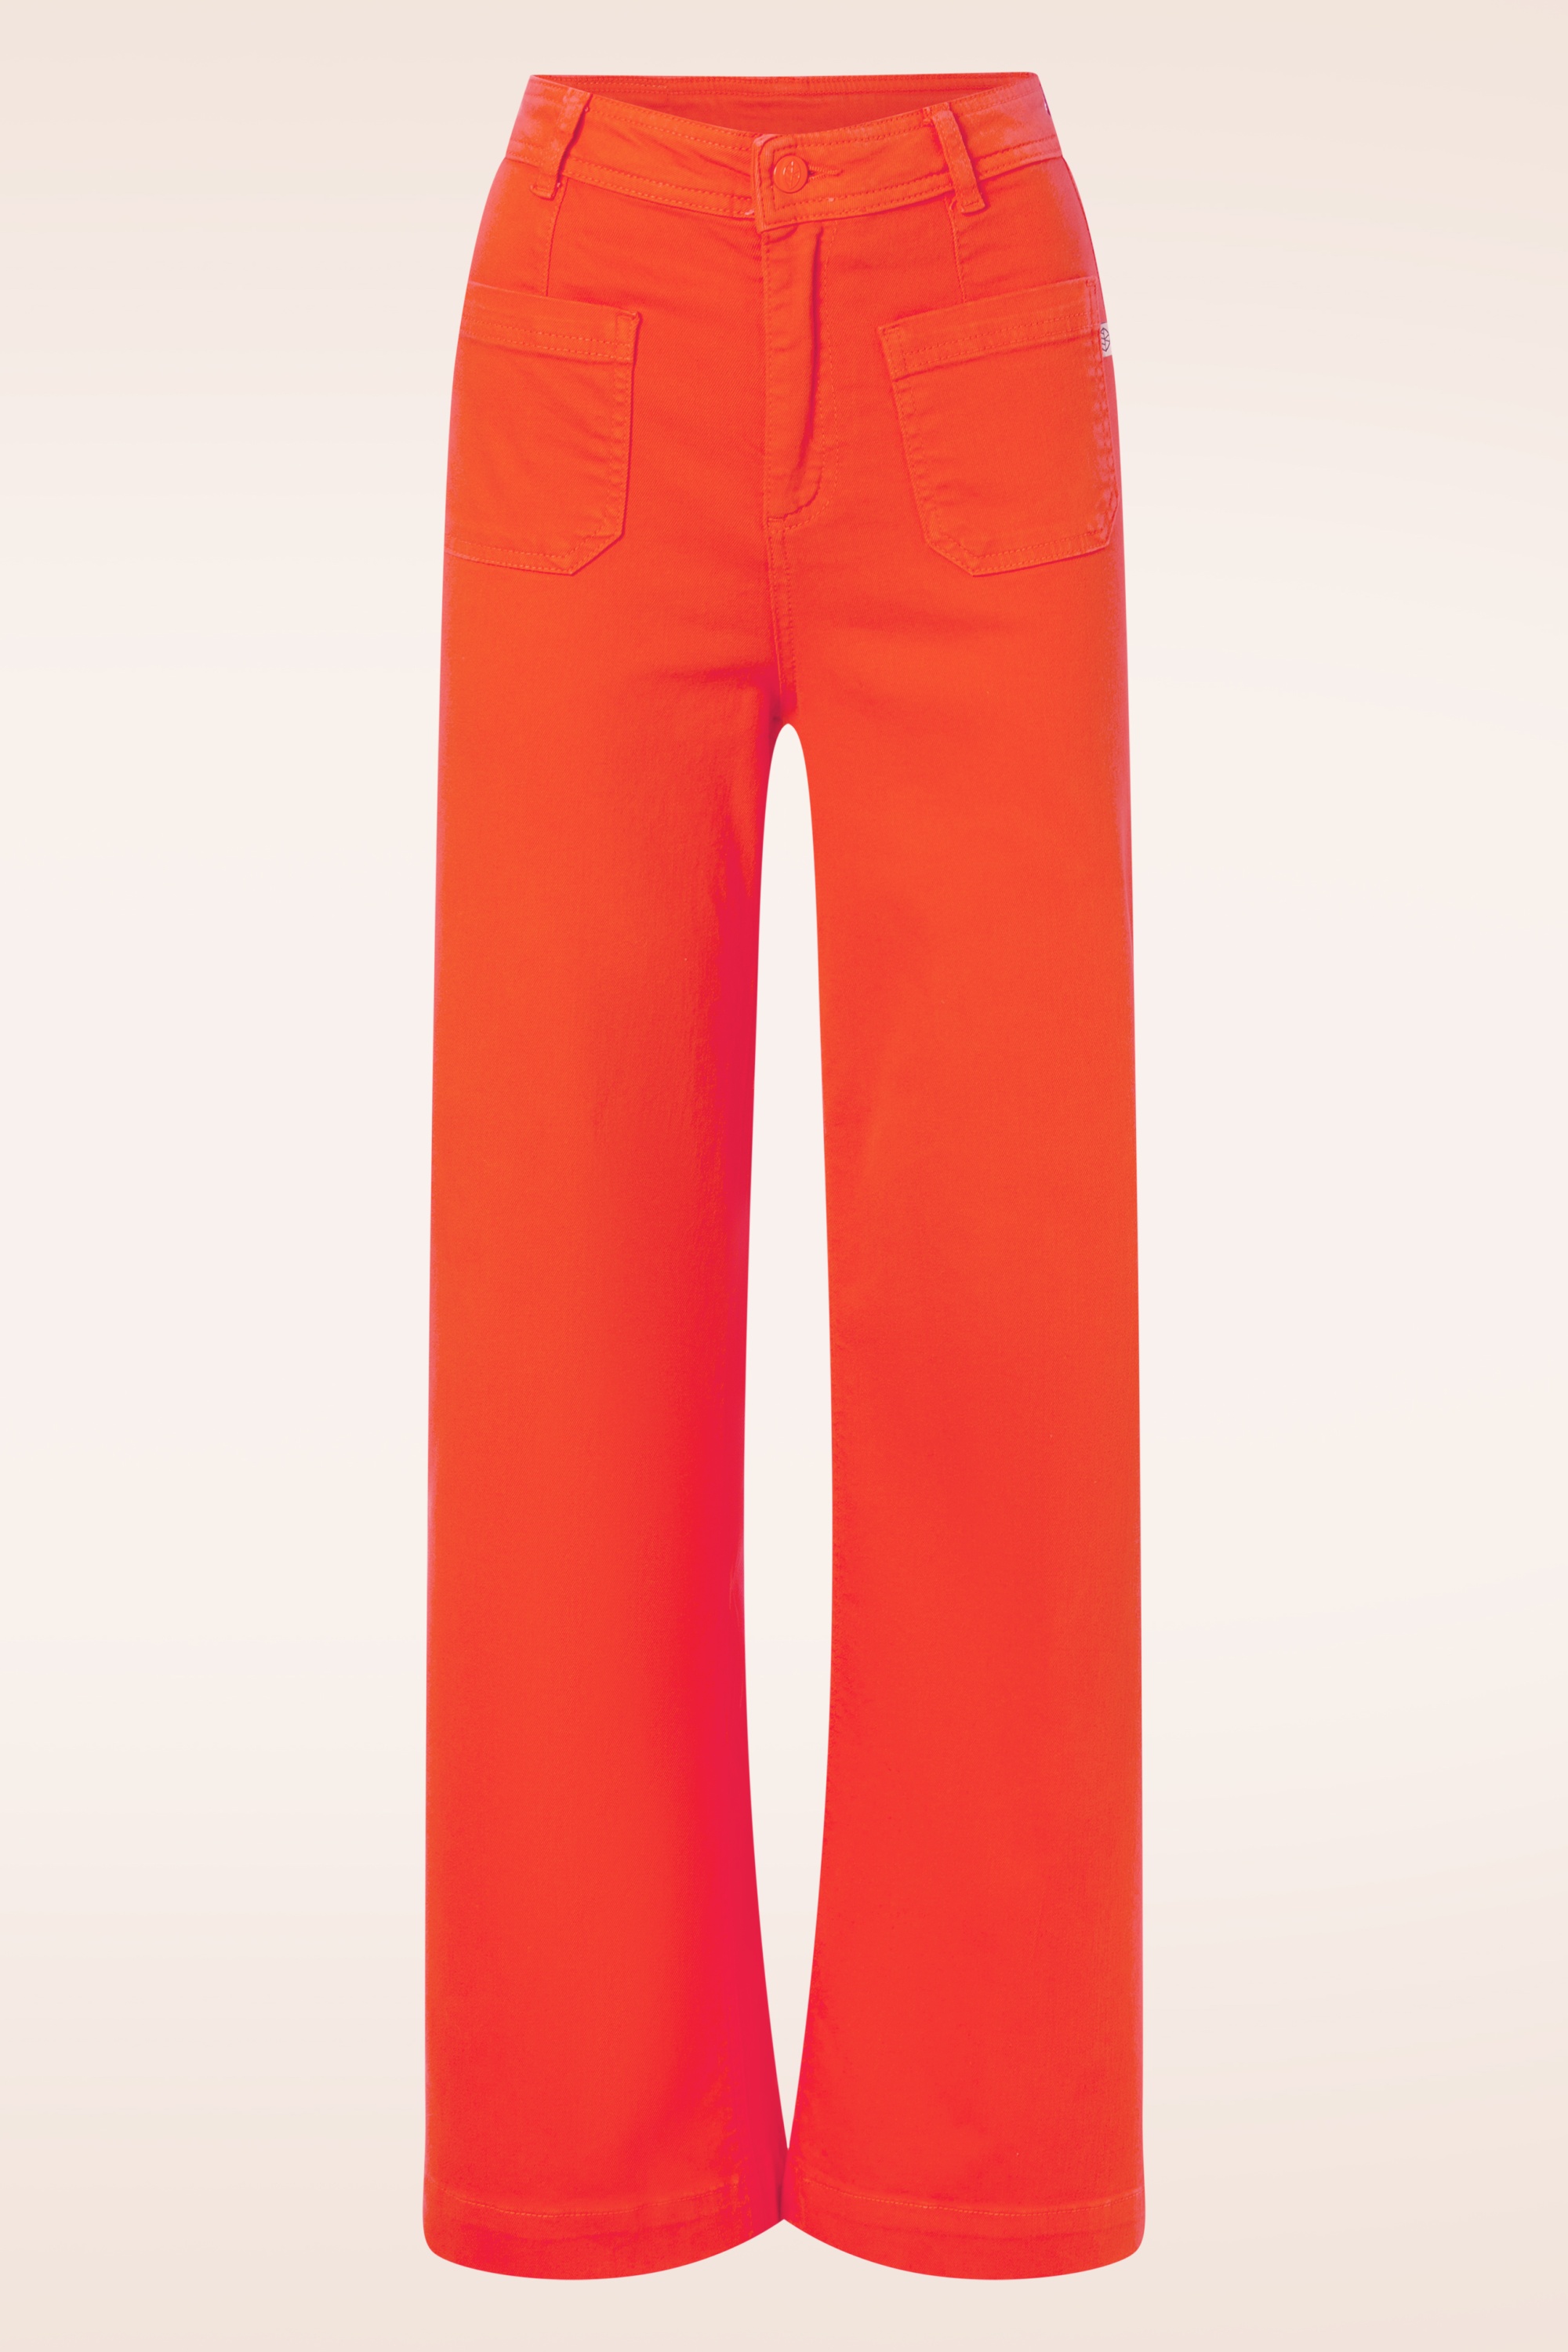 Surkana - Ryann broek in oranje